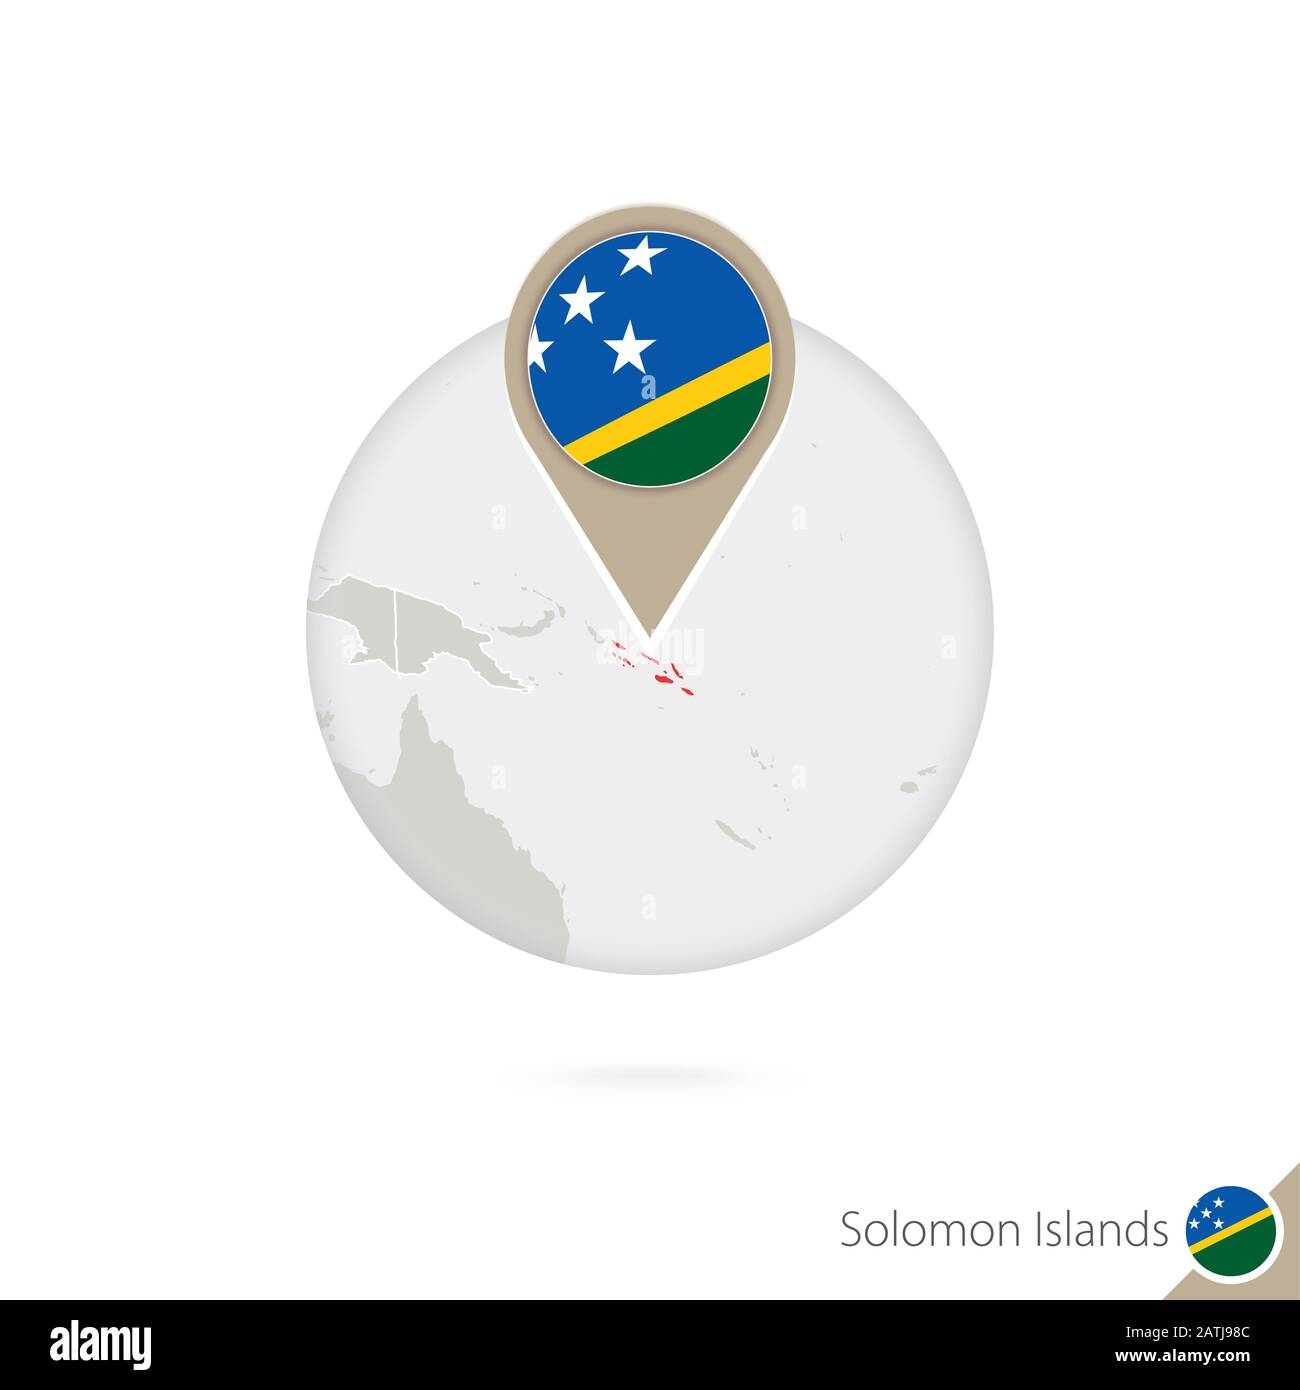 Isole Salomone mappa e bandiera in cerchio. Mappa di Isole Salomone, Isole  Salomone bandiera pin. Mappa delle Isole Salomone nello stile del mondo.  Vettore Ill Immagine e Vettoriale - Alamy